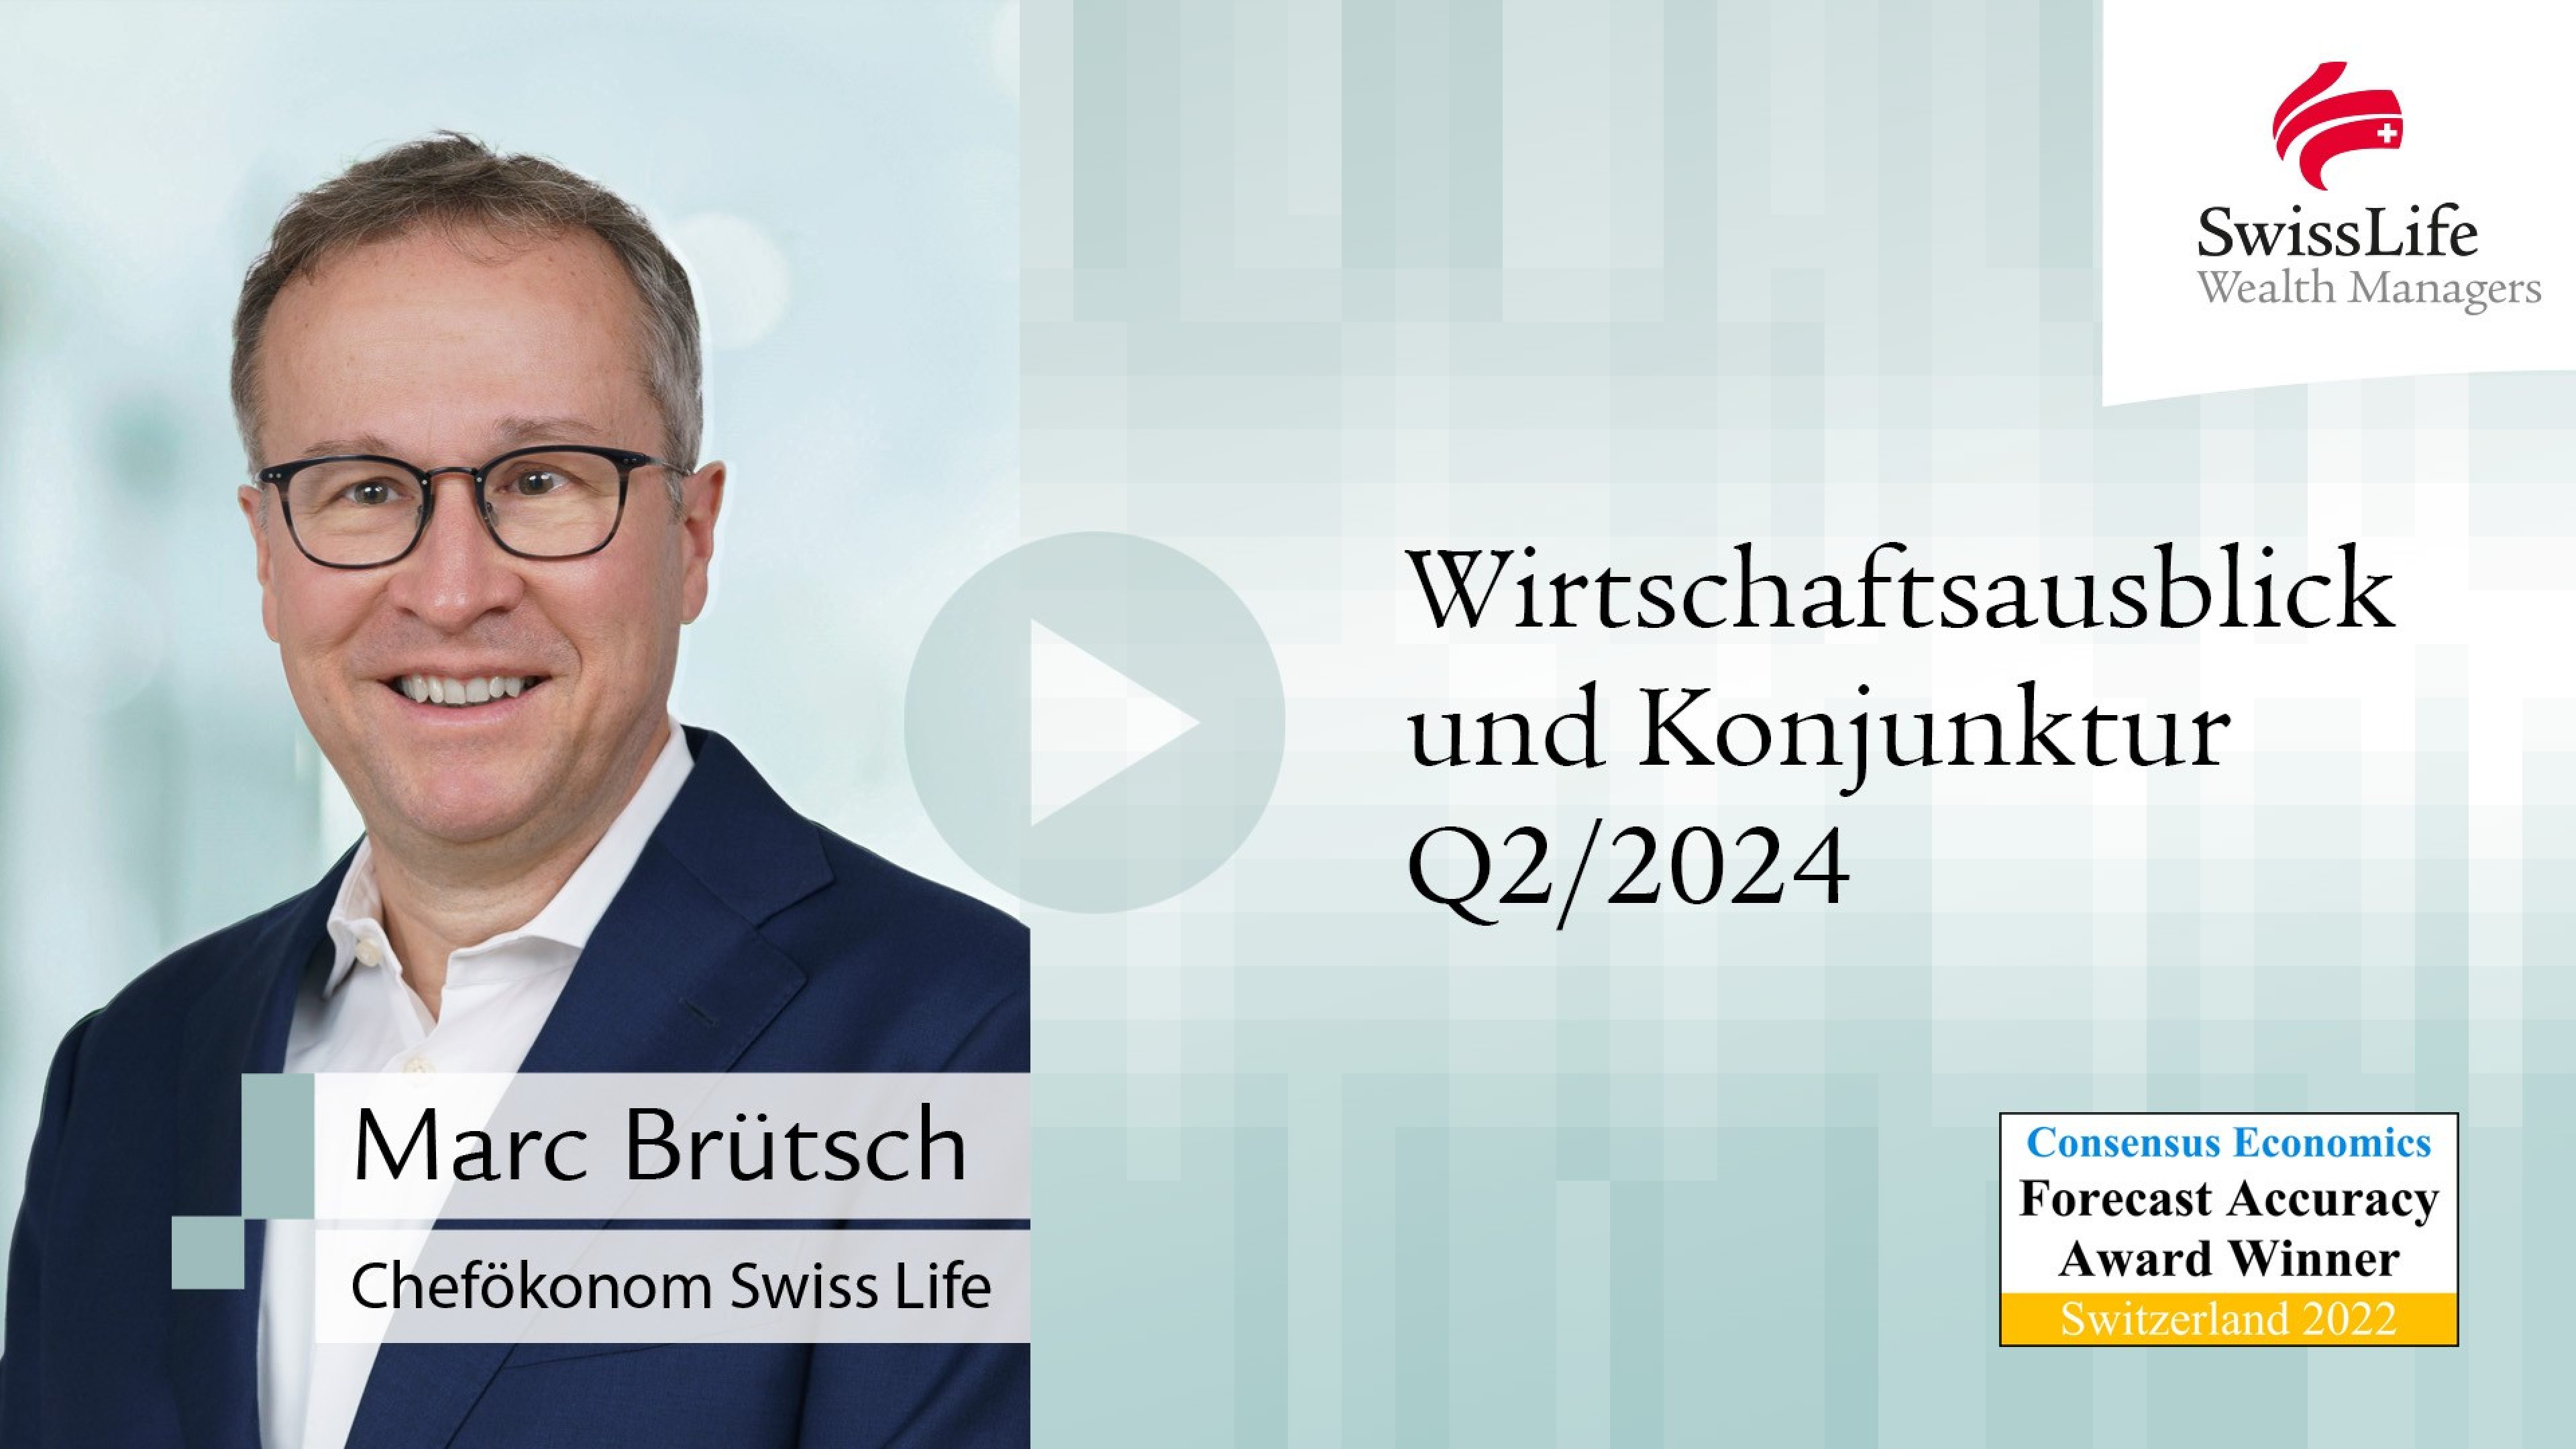 Quartalsvideo 3-2023 Wirtschaftsausblick und Konjunktur von Swiss Life Wealth Managers